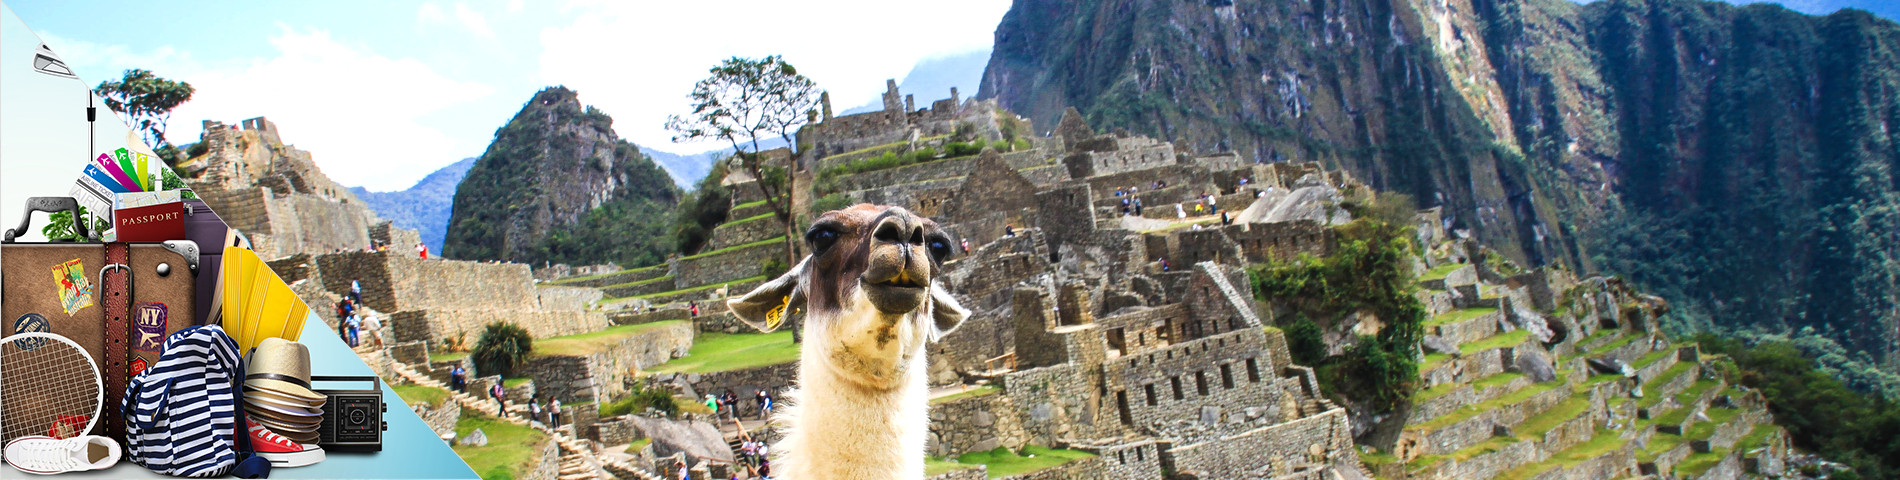 Peru - Spansk for Turisme